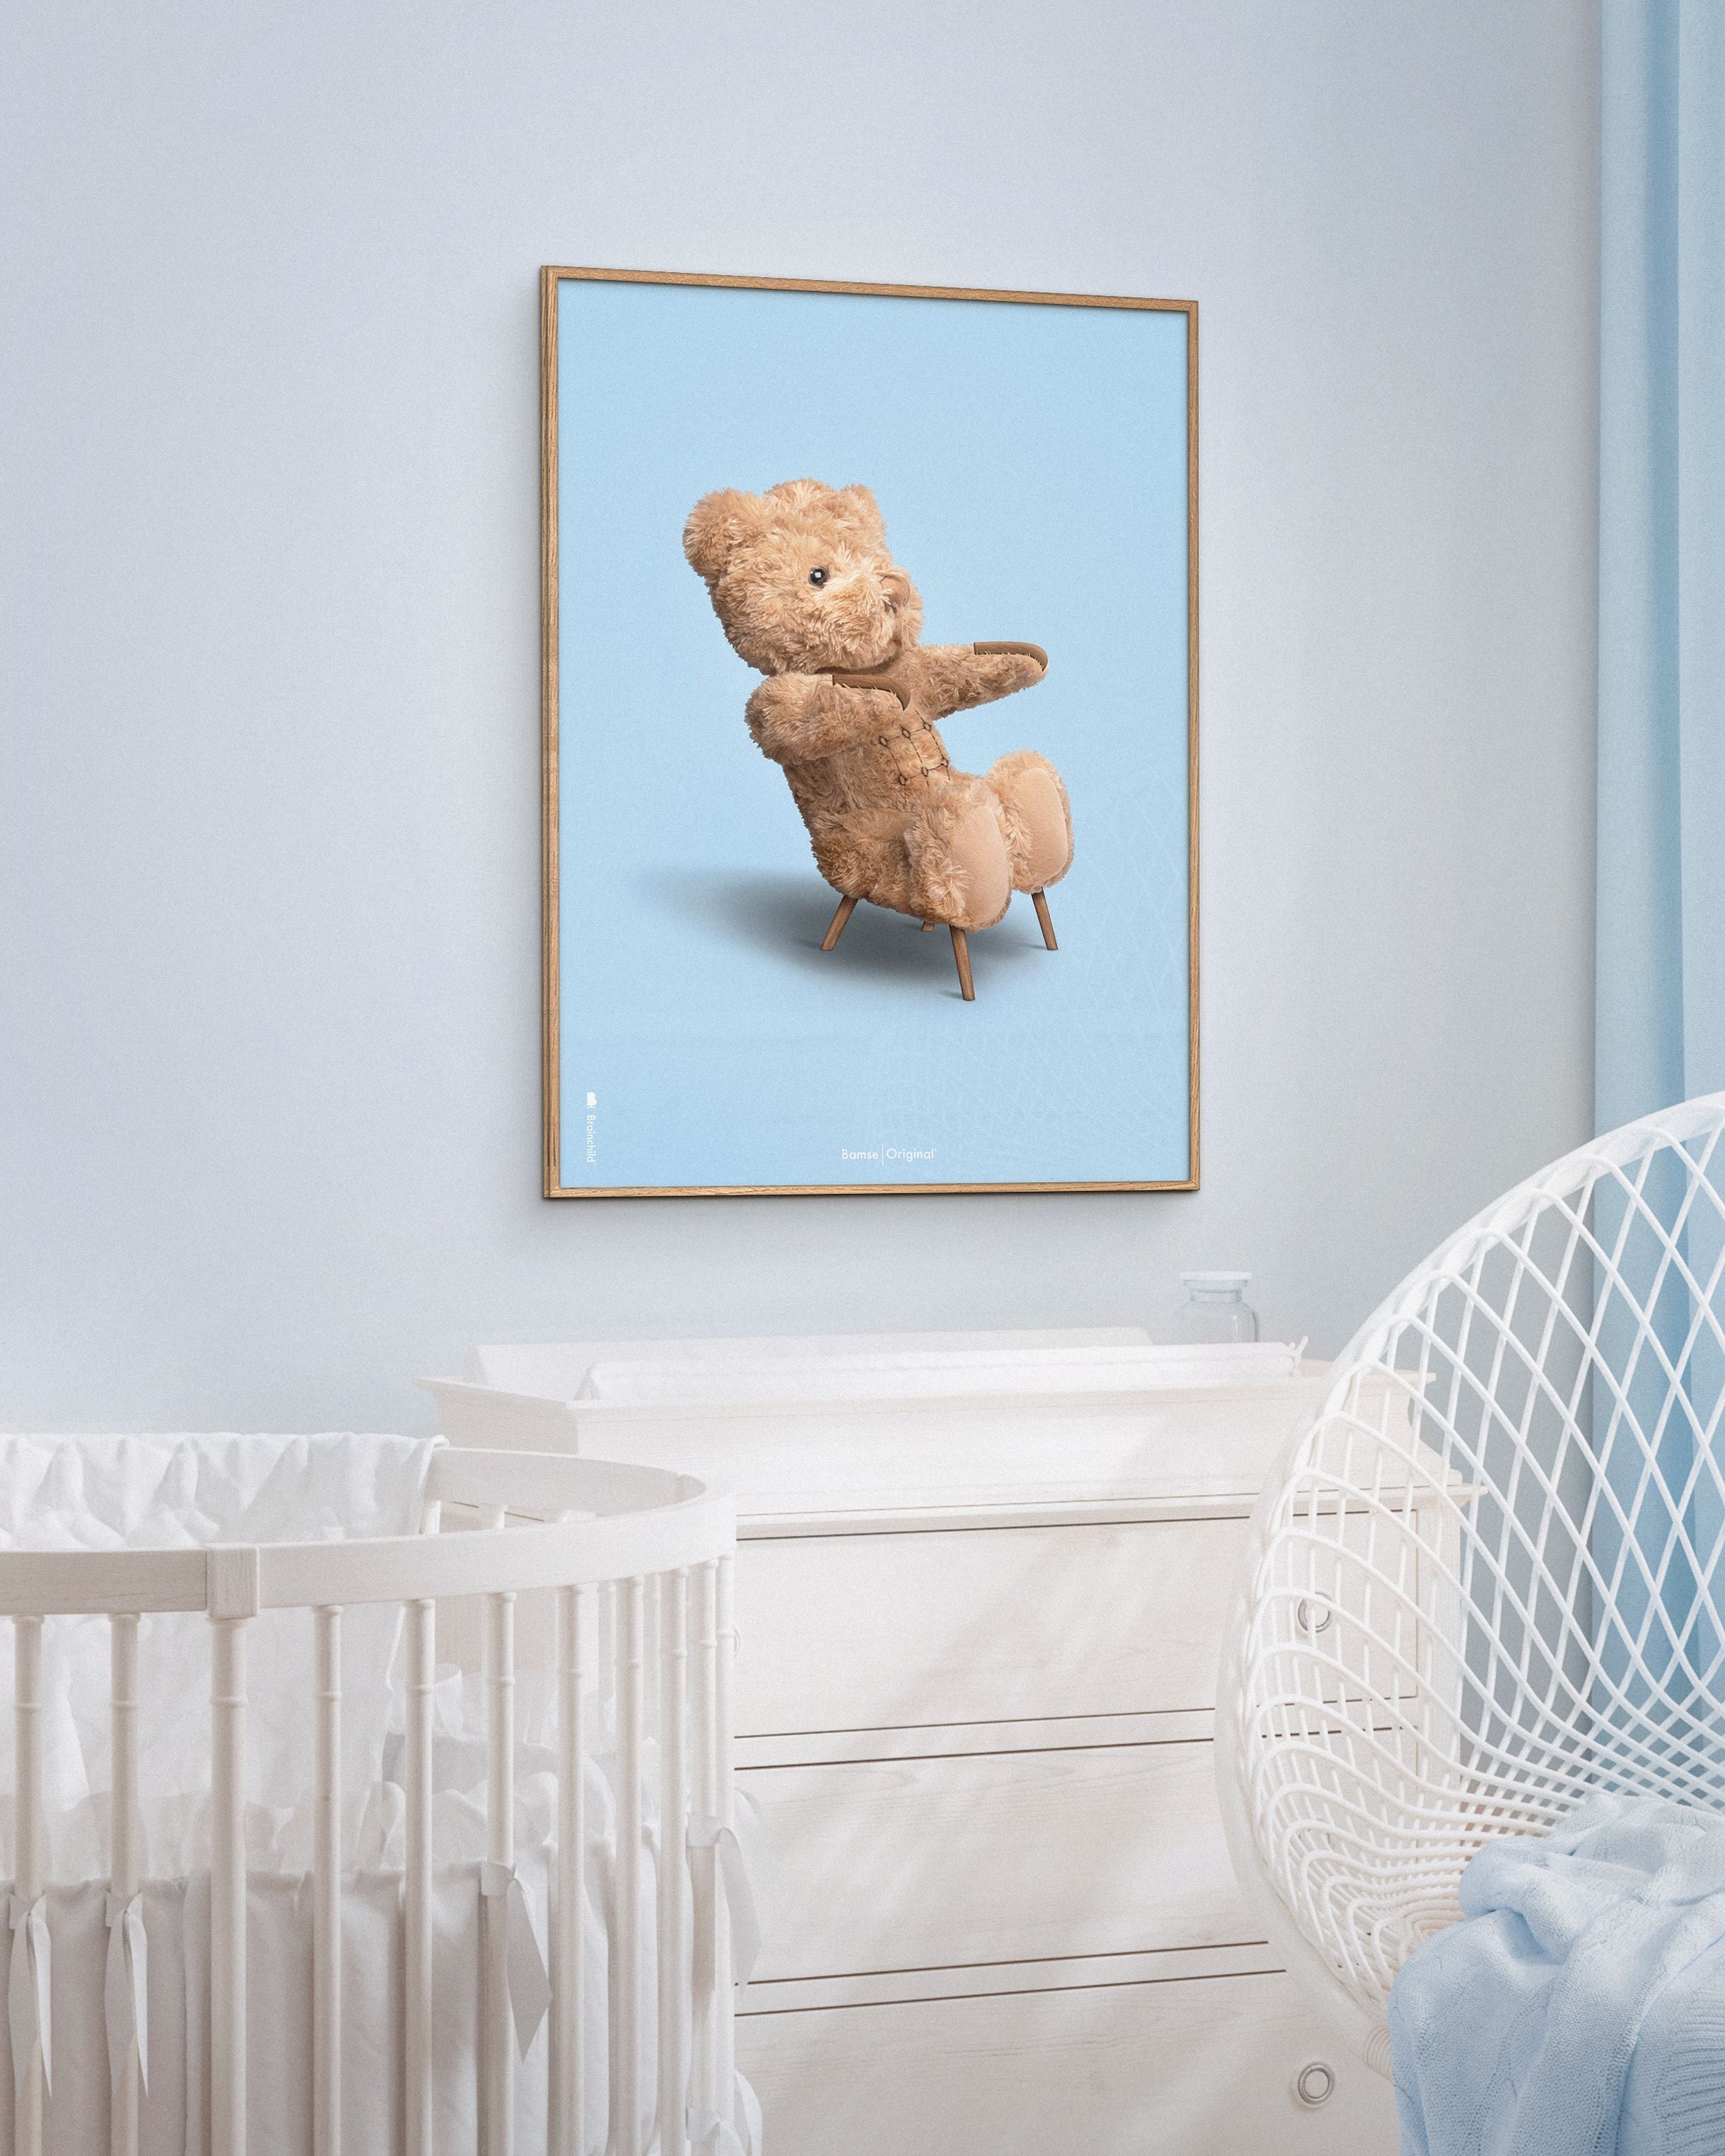 Brainchild Teddy Bear Classic plakát z plakátu vyrobený z světla dřeva 70x100 cm, světle modré pozadí